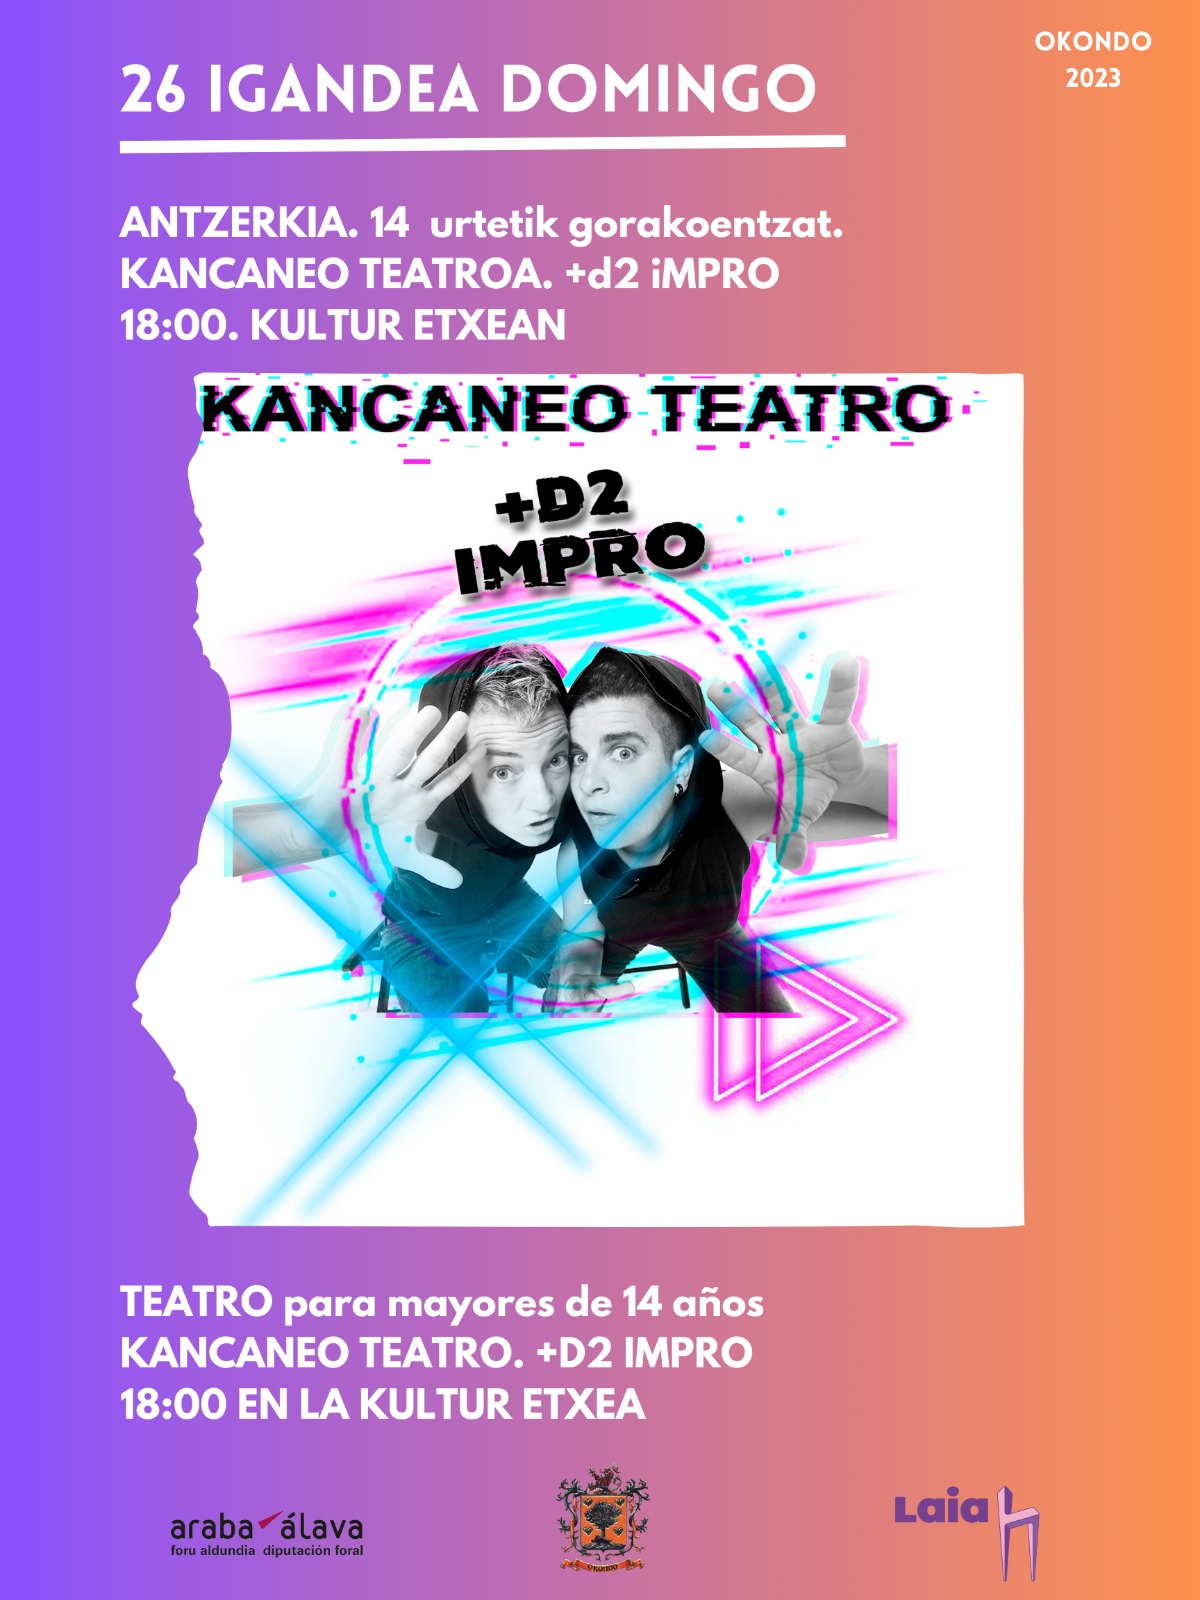 Teatro Kancaneo